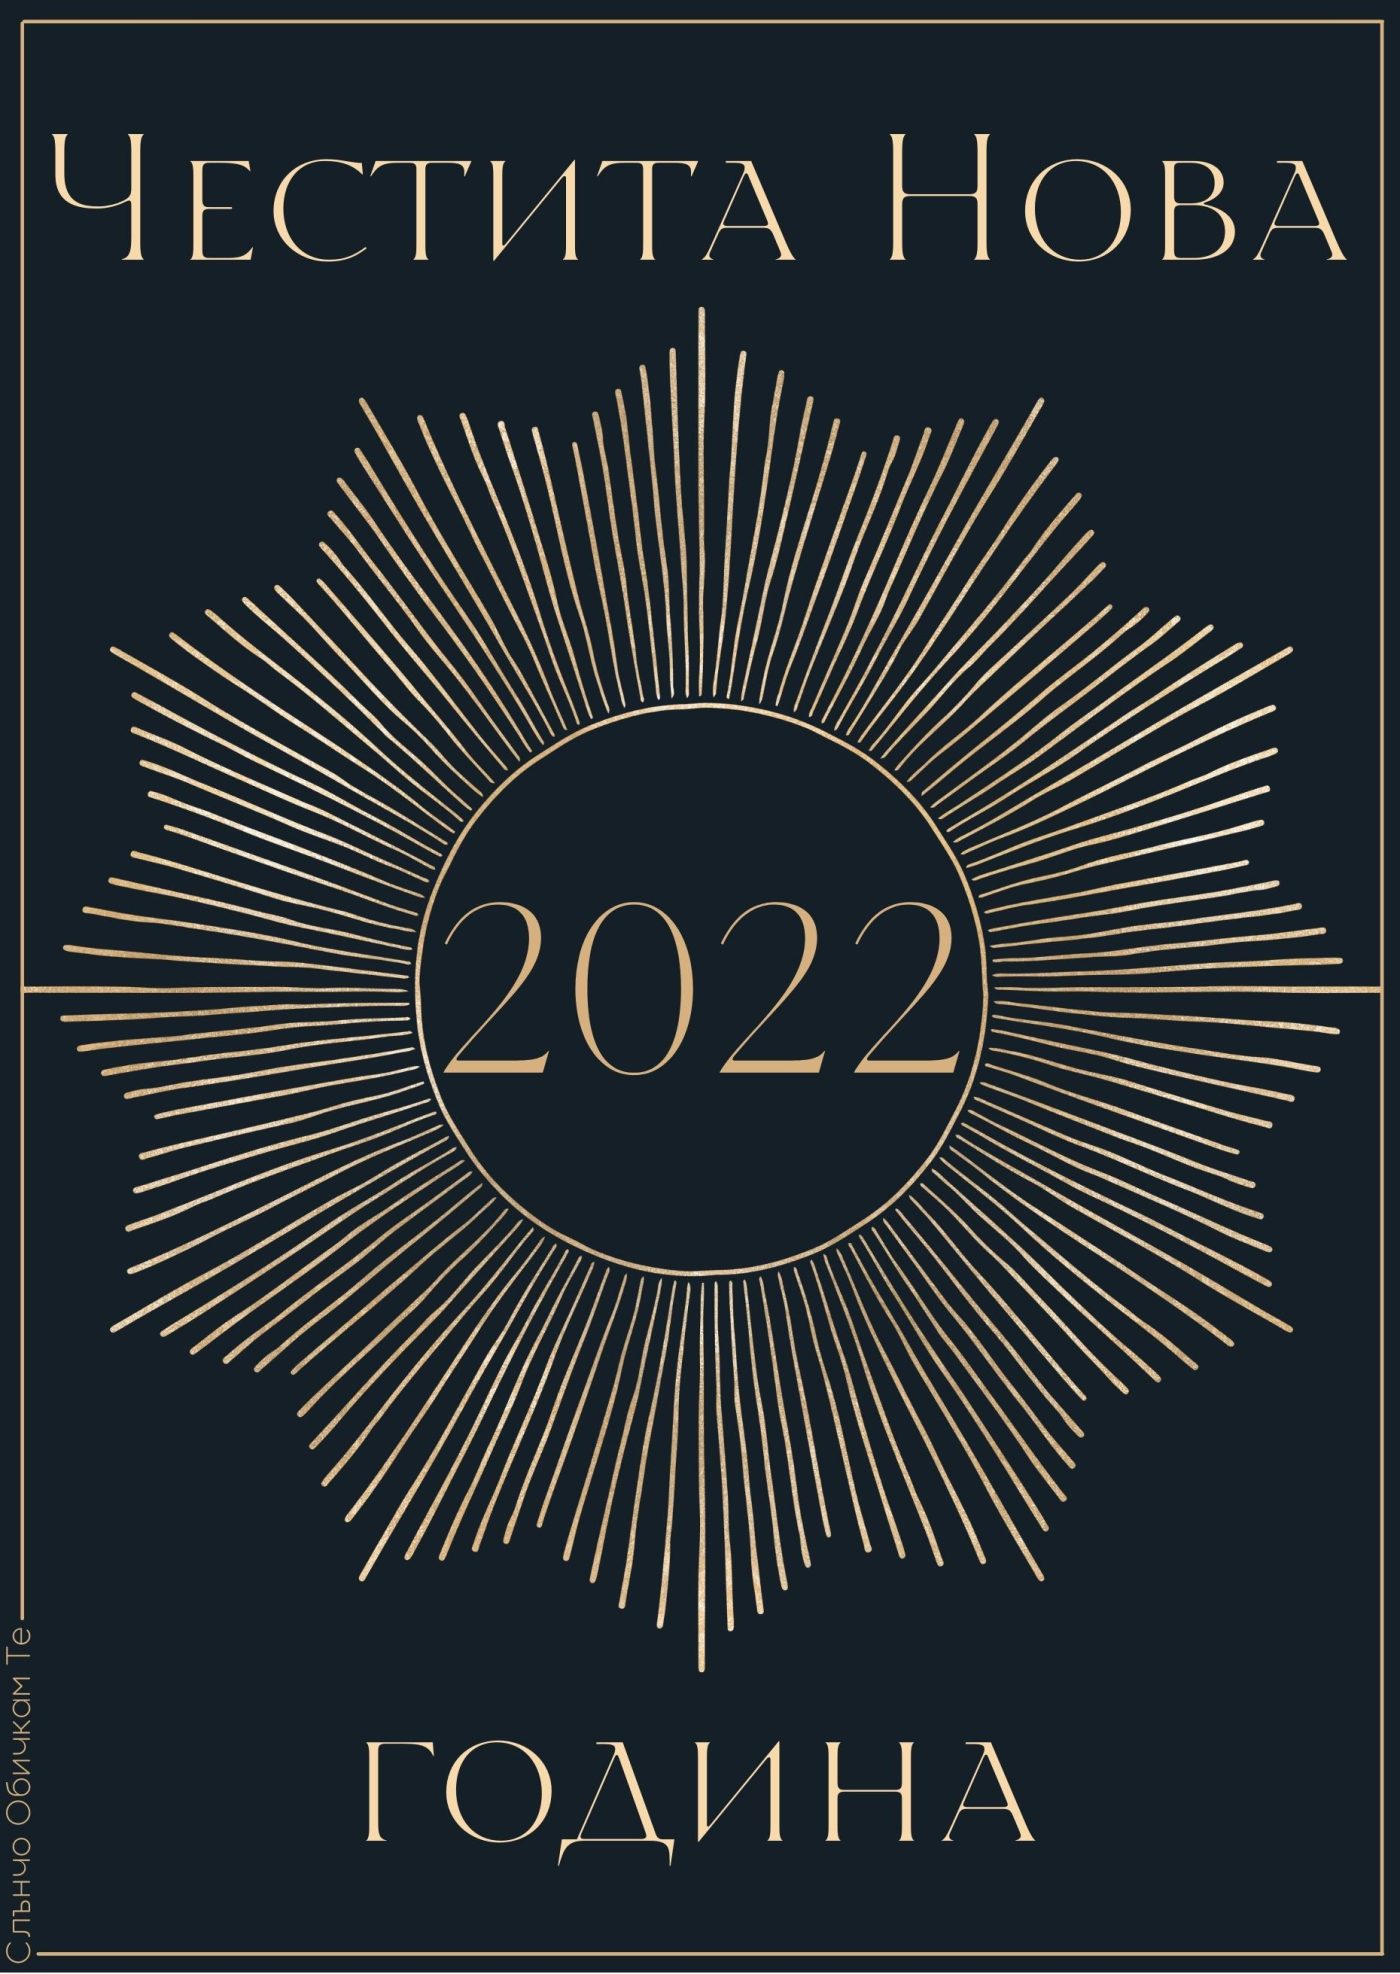 Честита нова година, златиста картичка - картички за Нова Година 2022, честита нова година 2022, нова година 2022, весели празници, златен надпис, луксозна картичка